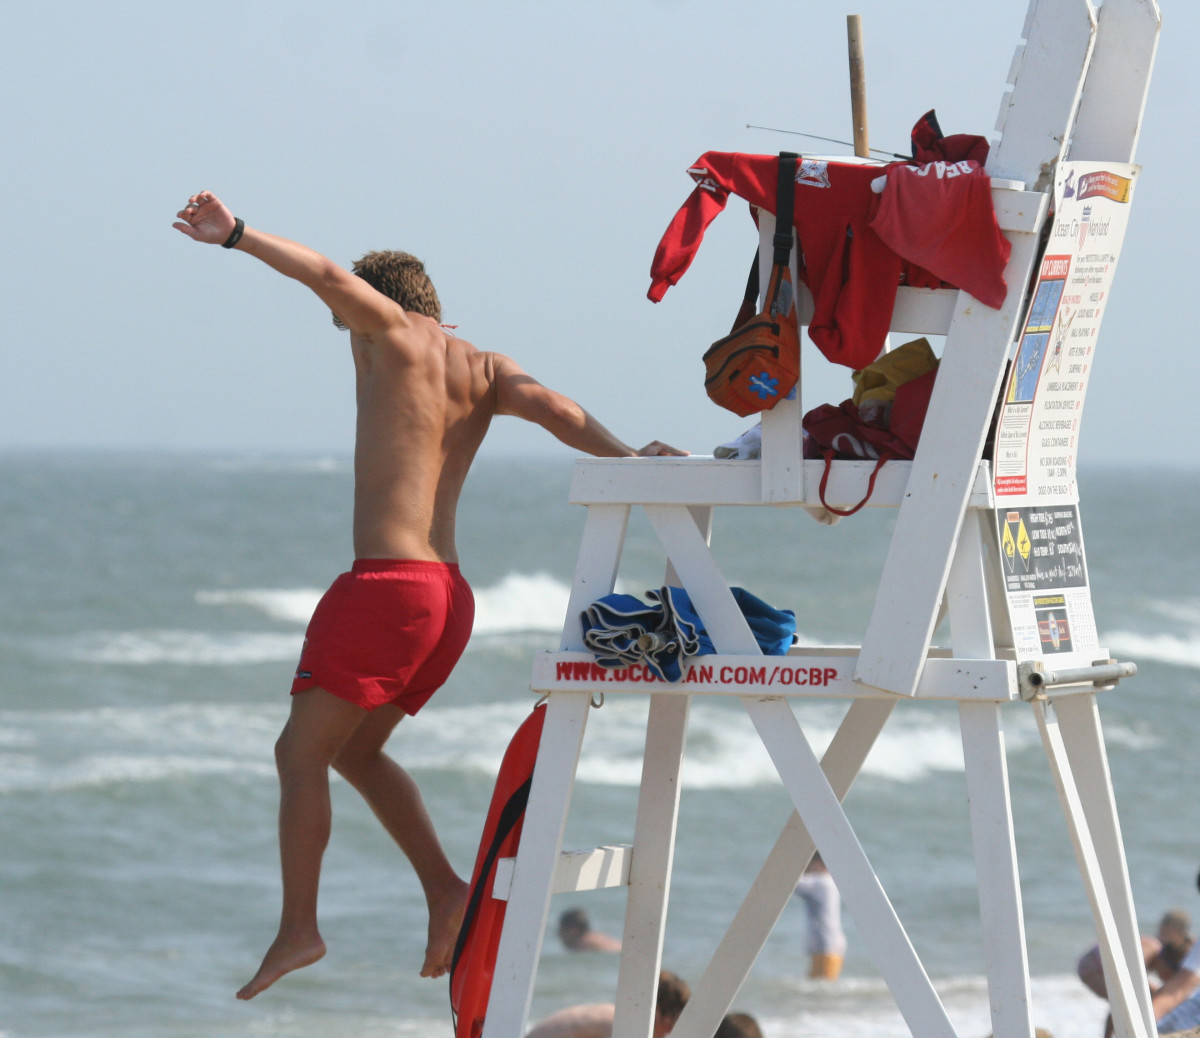 A lifeguard springs into action.